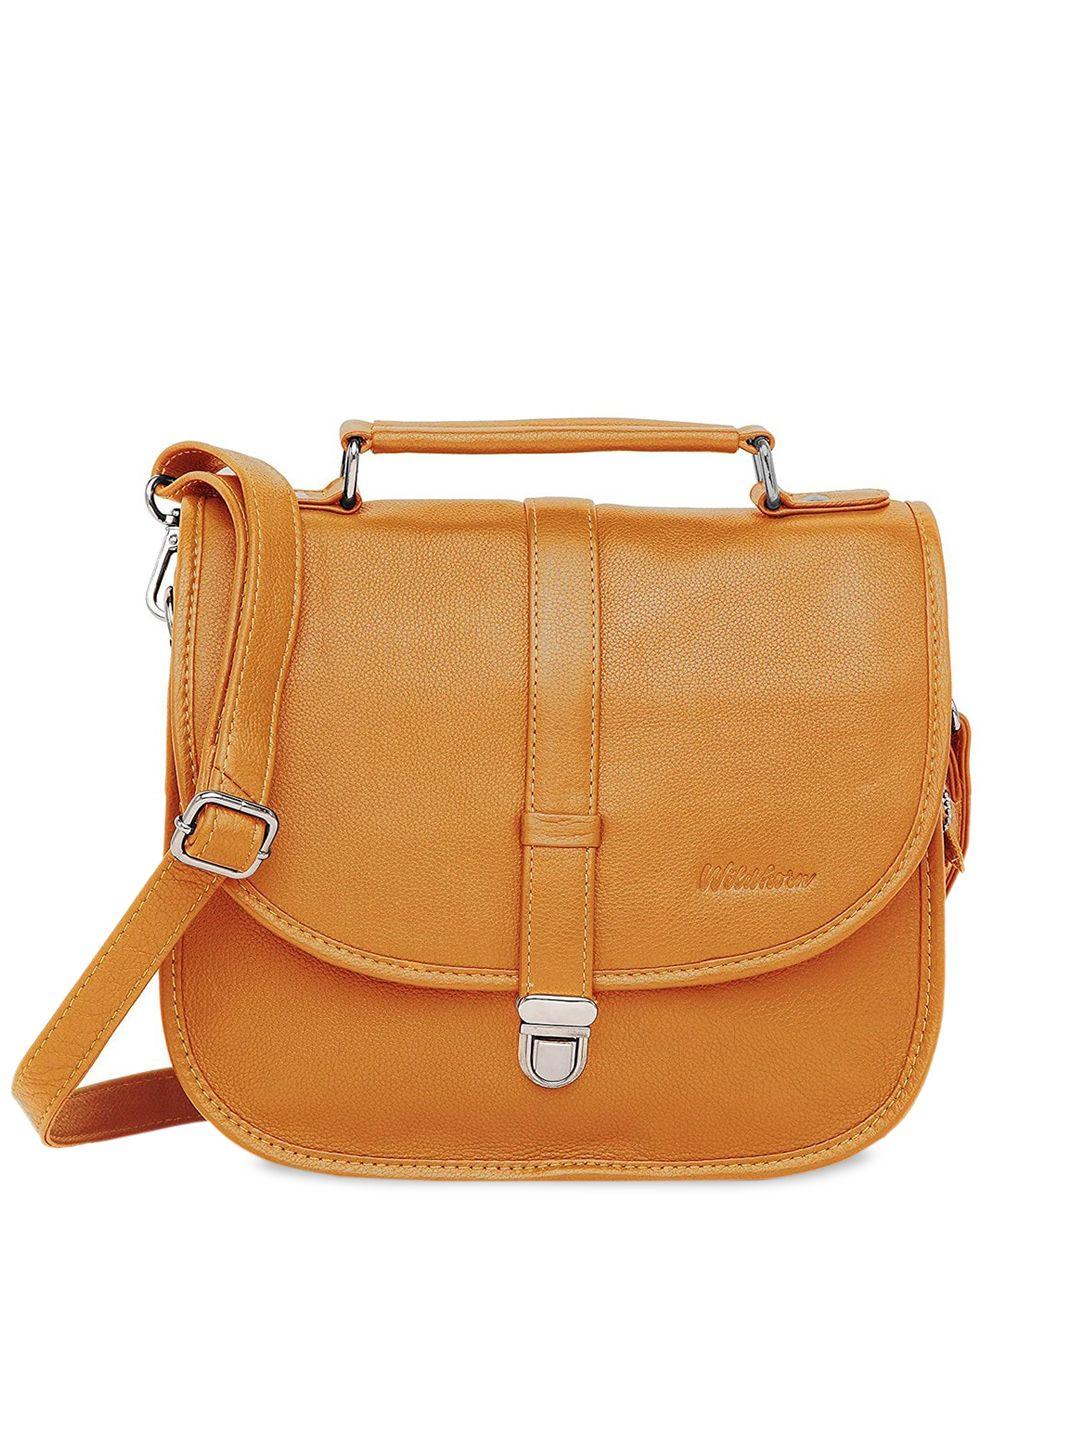 wildhorn women yellow leather structured satchel